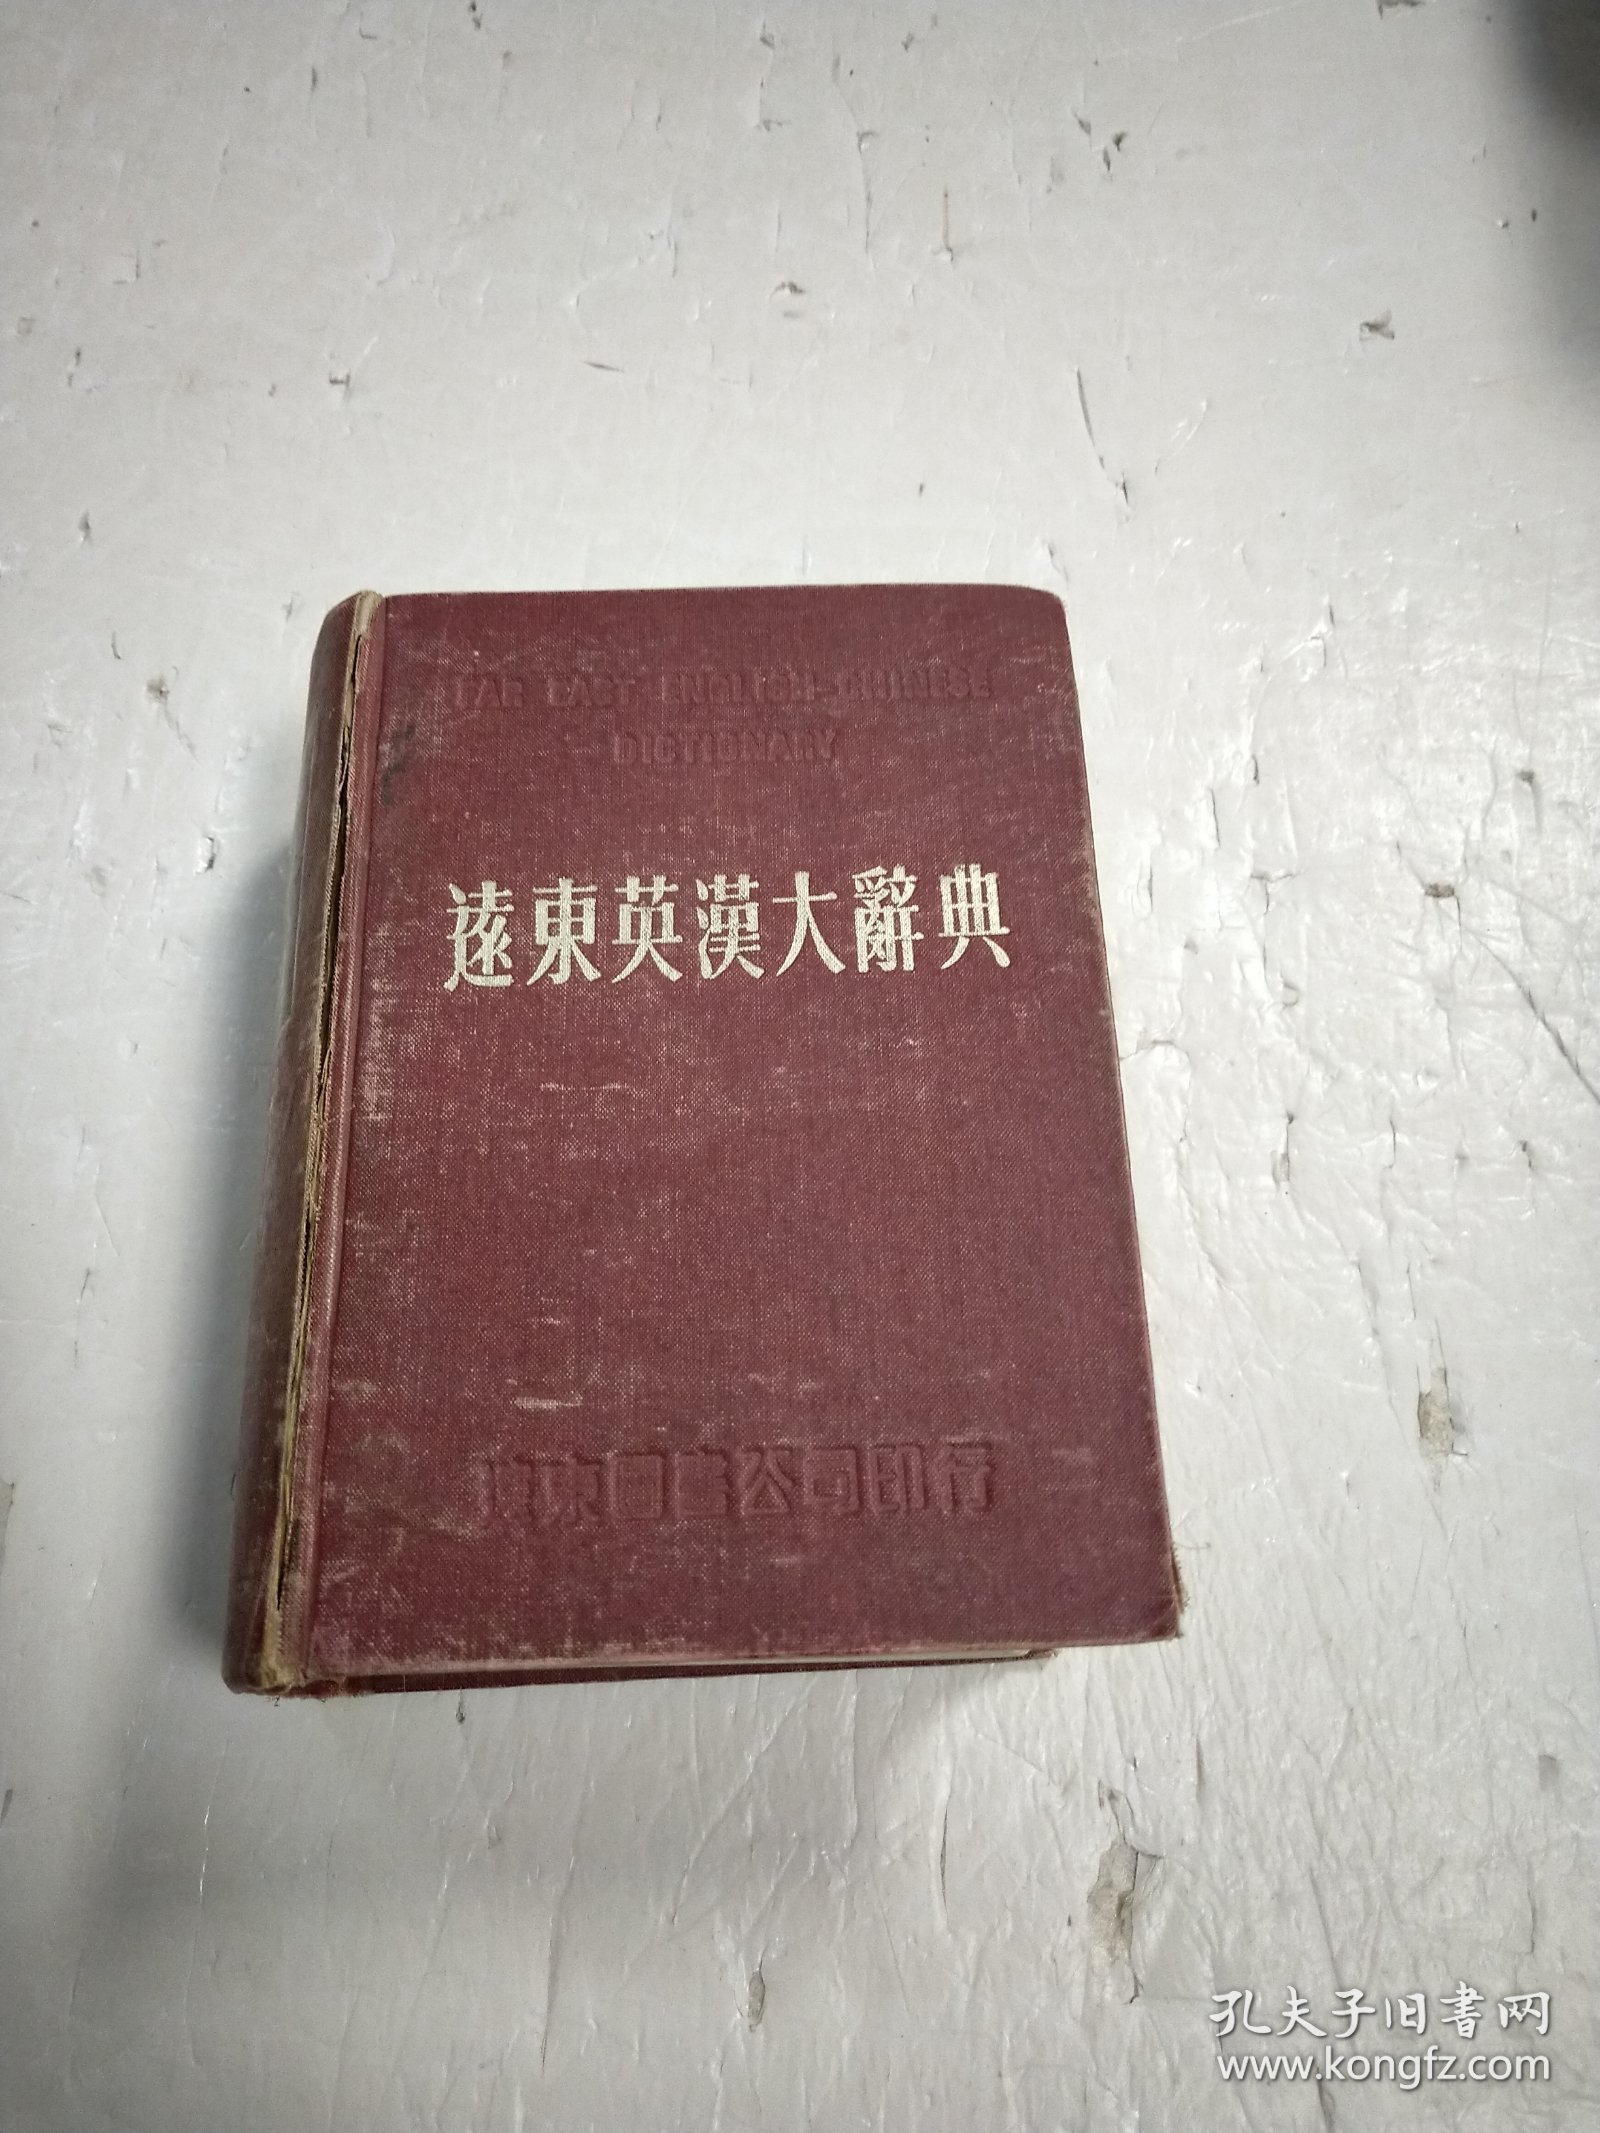 远东英汉大词典